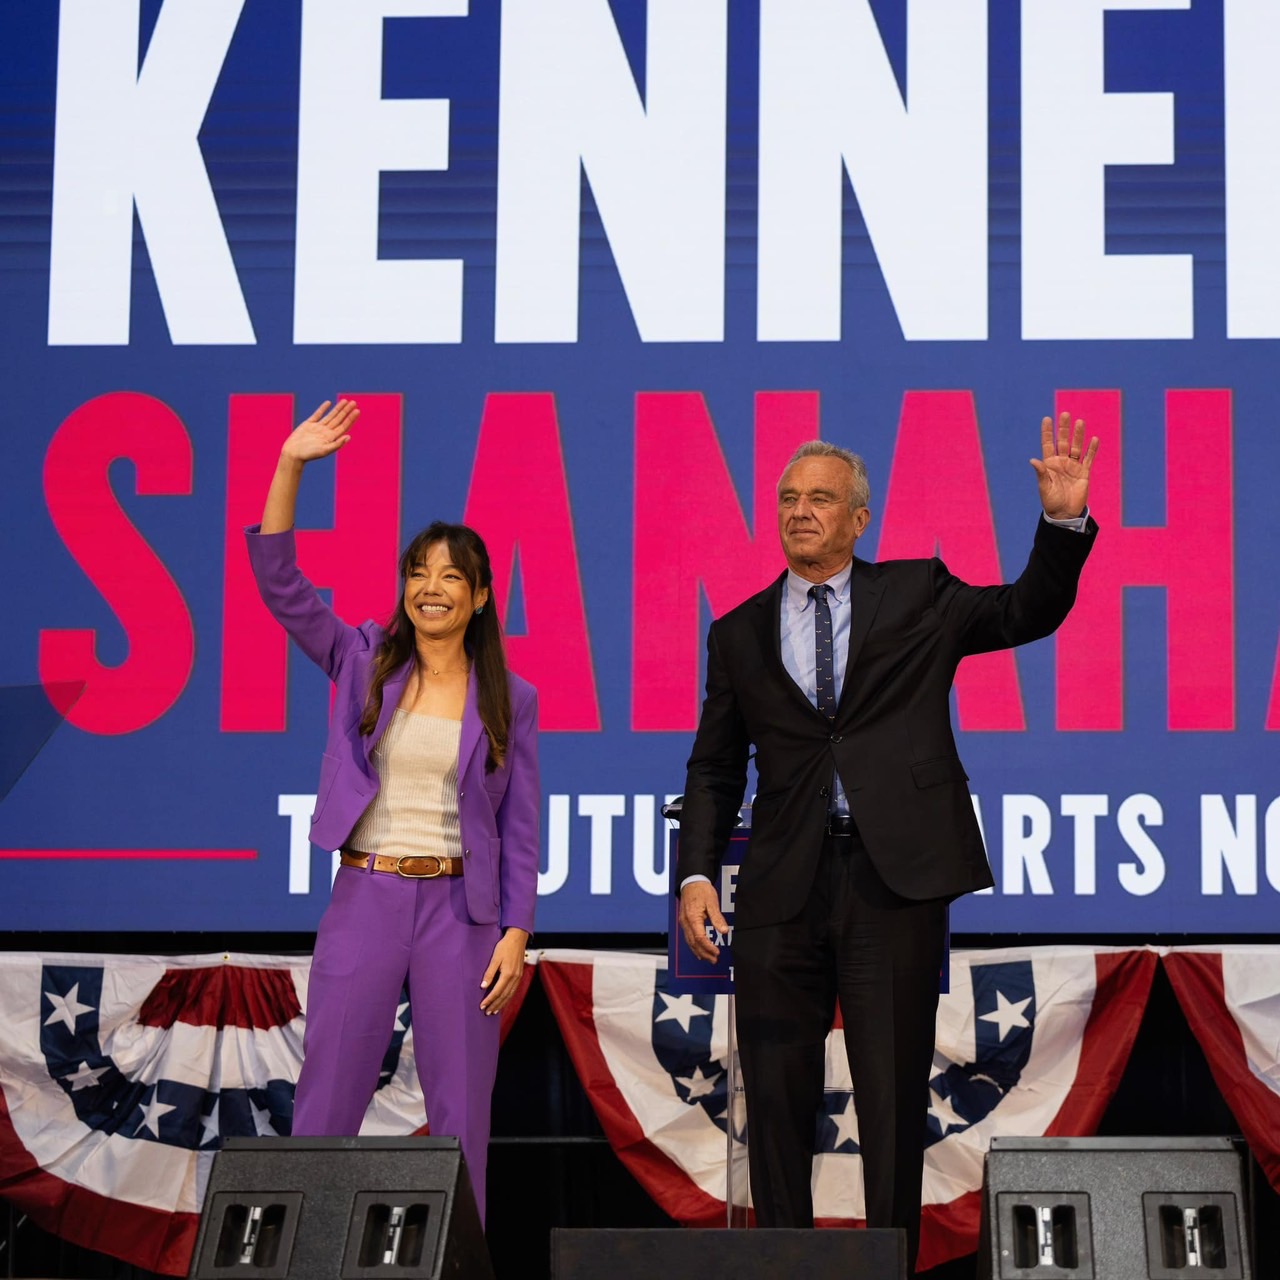 美國總統獨立參選人小羅勃．甘迺迪（右）找來擁有華裔血統的律師夏娜漢（左）擔任副手。圖/取自@robertfkennedyjr IG